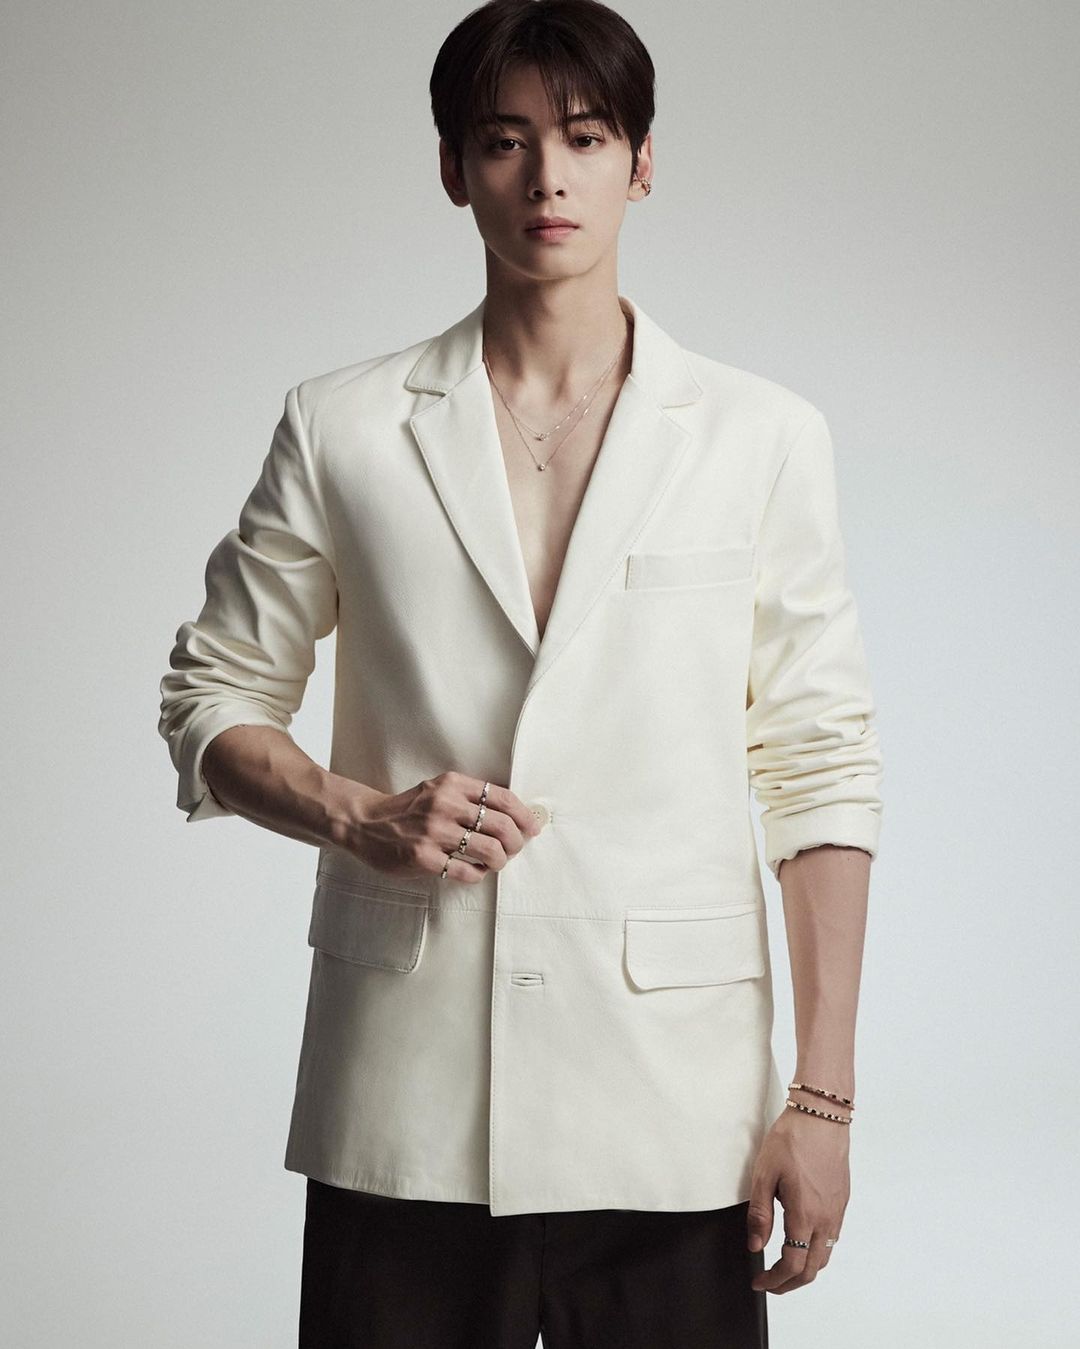 Cha Eun-woo, a business class prince